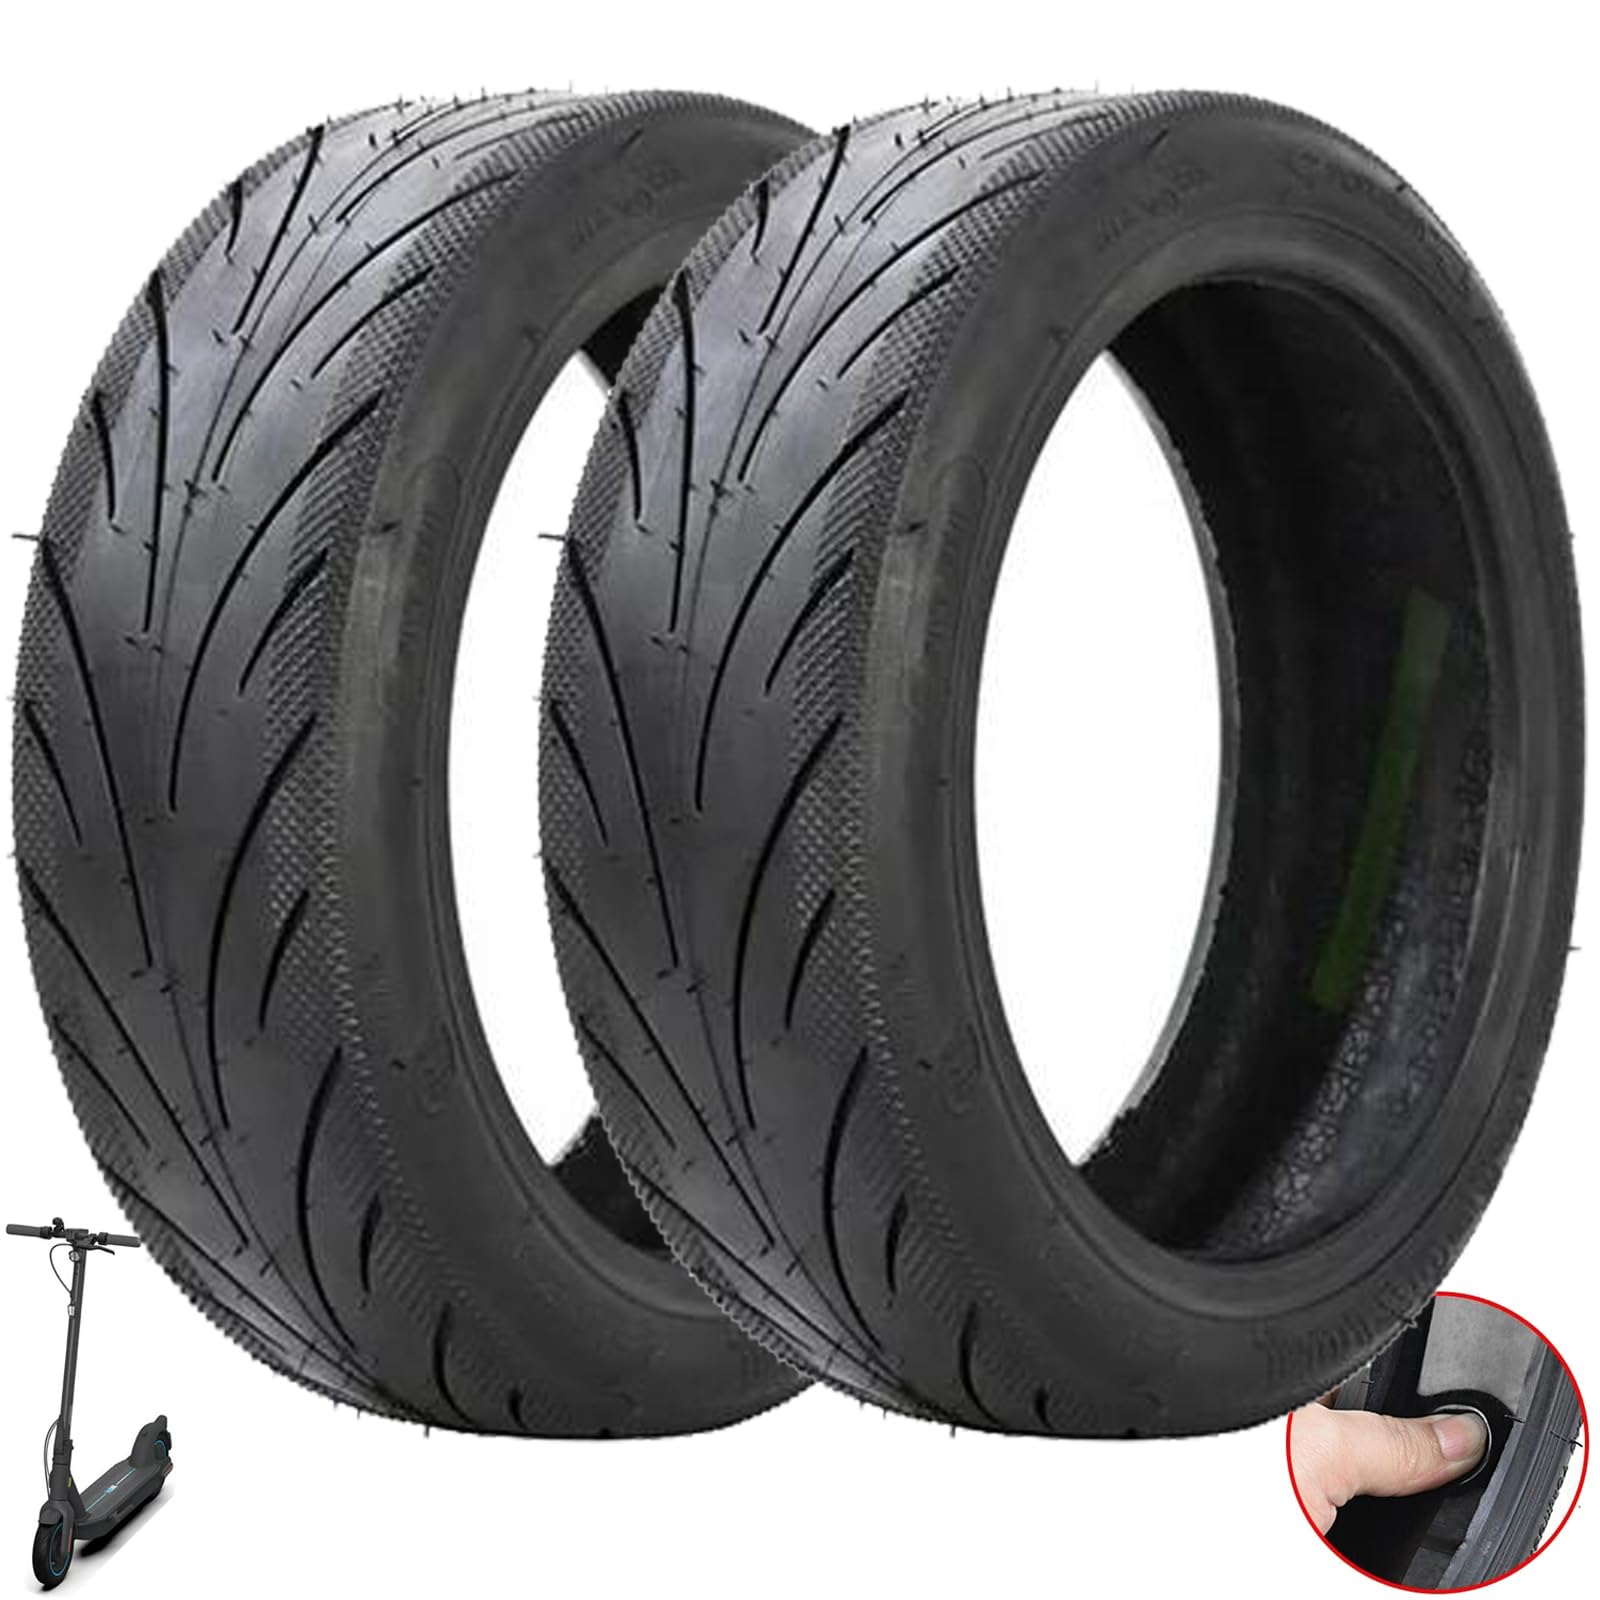 Tmom Ersatzräder Reifen für Ninebot Max G30 Elektroroller Gummireifen 60/70-6.5 Scooter Schlauchloser Reifen (2 Stück) von HYGJ